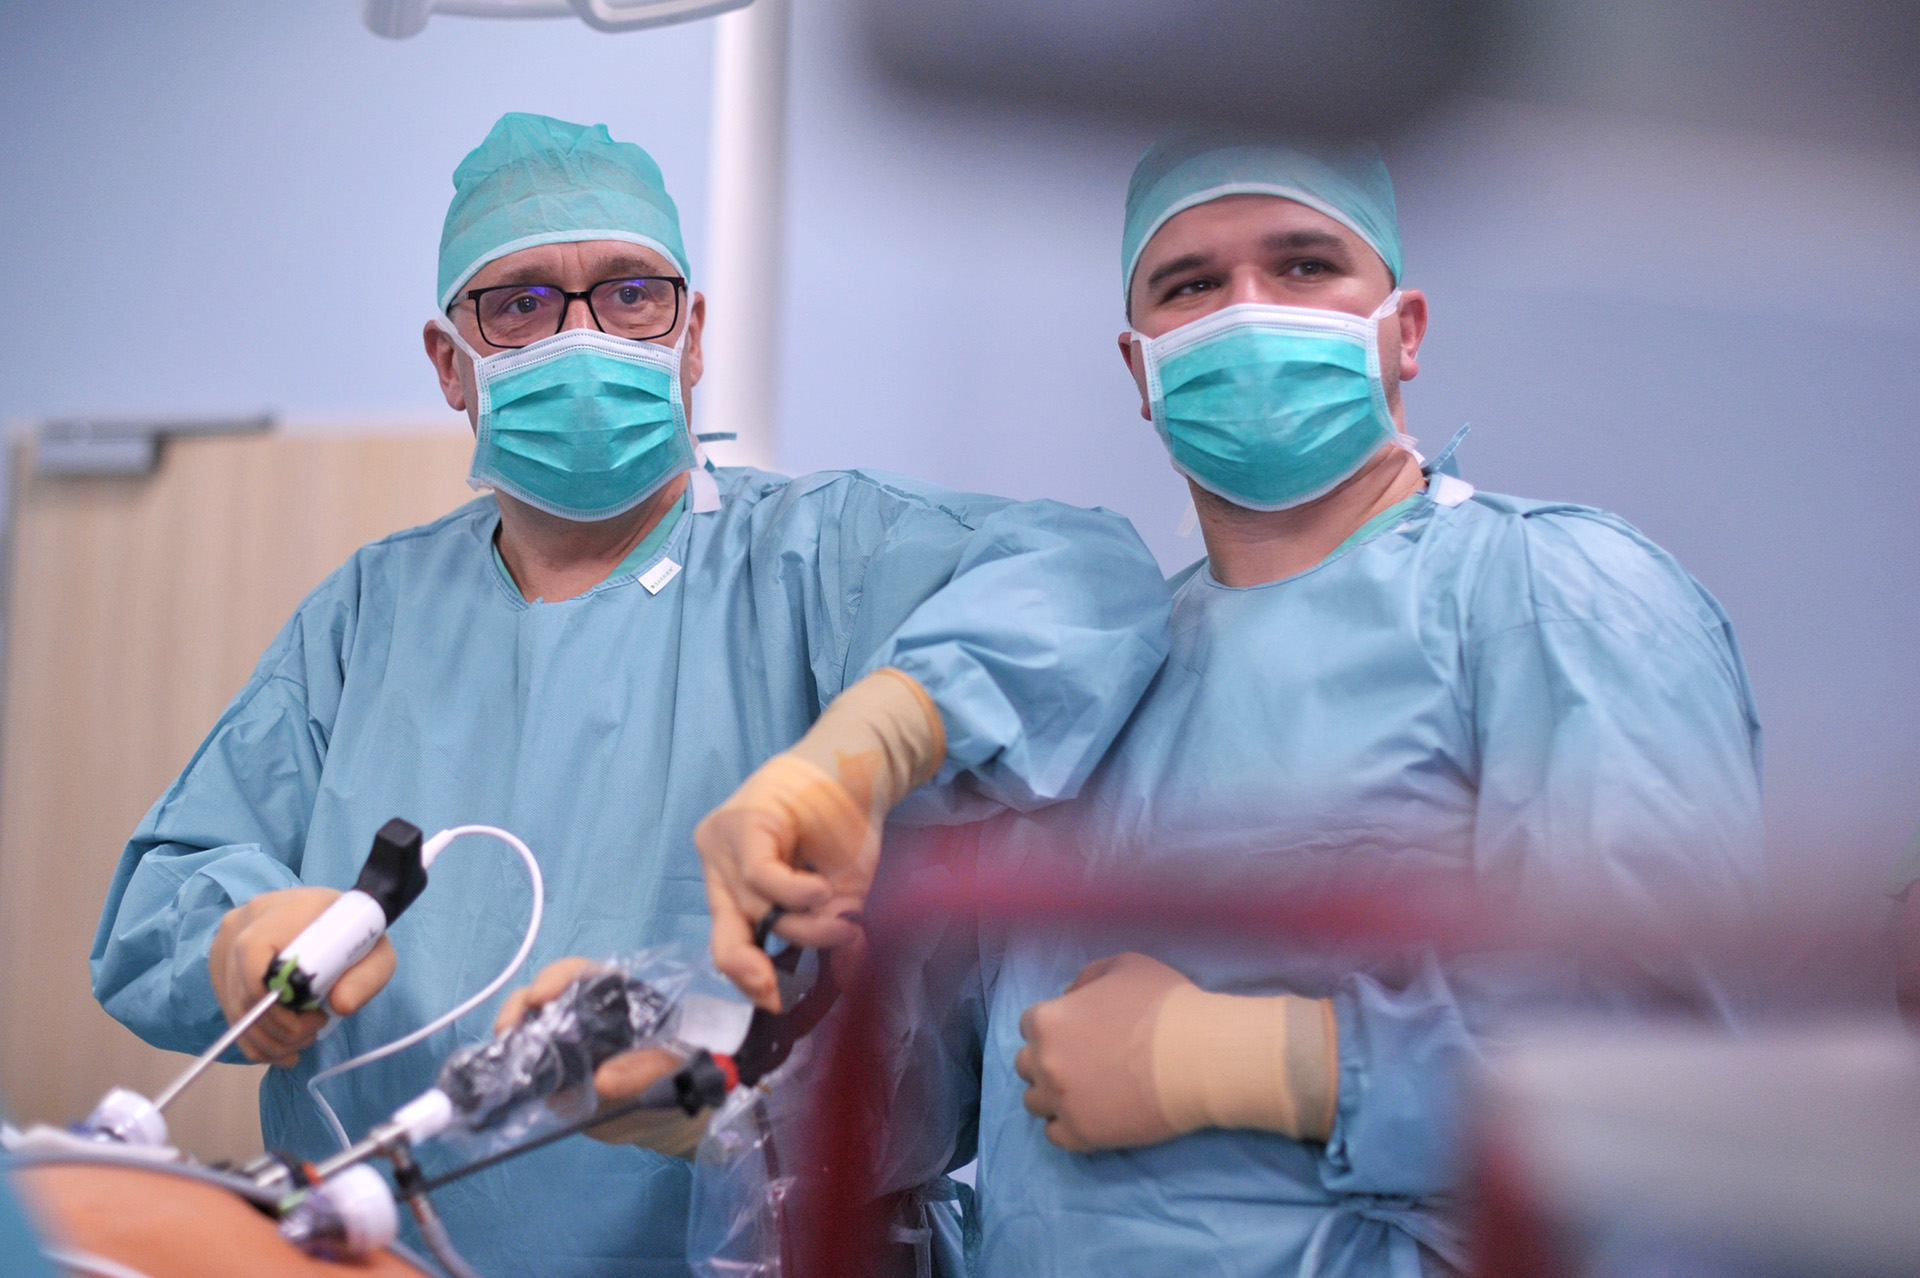 Operacja bariatryczna (rękawowa resekcja żołądka) w Szpitalu